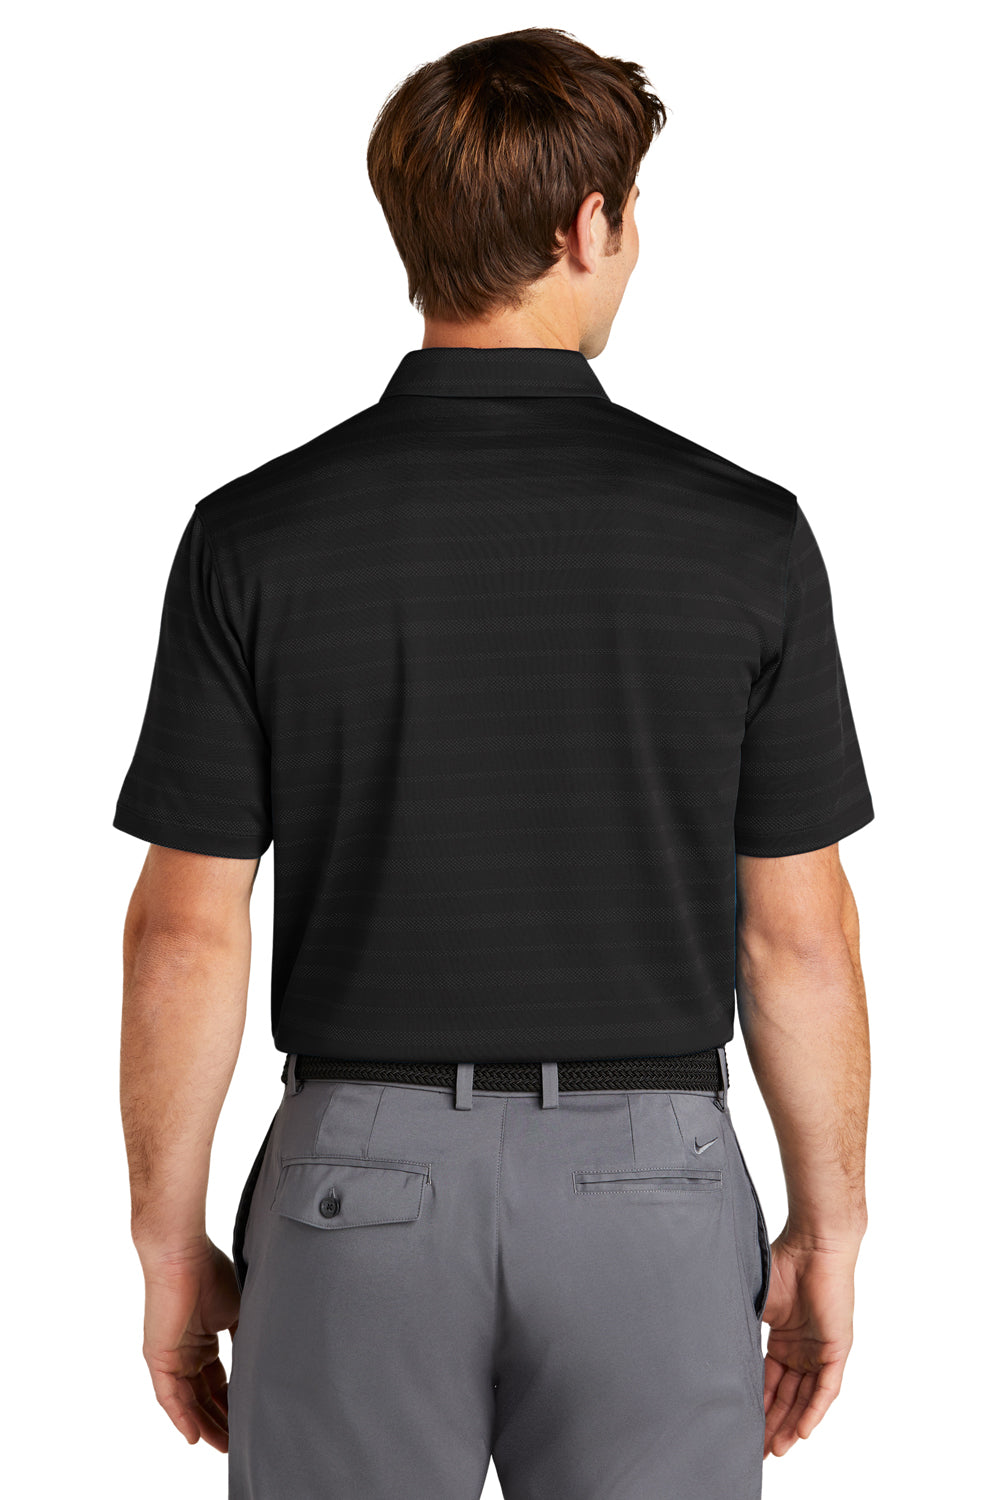 Nike NKDC2115 Mens Vapor Jacquard Dri-Fit Moisture Wicking Short Sleeve Polo Shirt Black Model Back